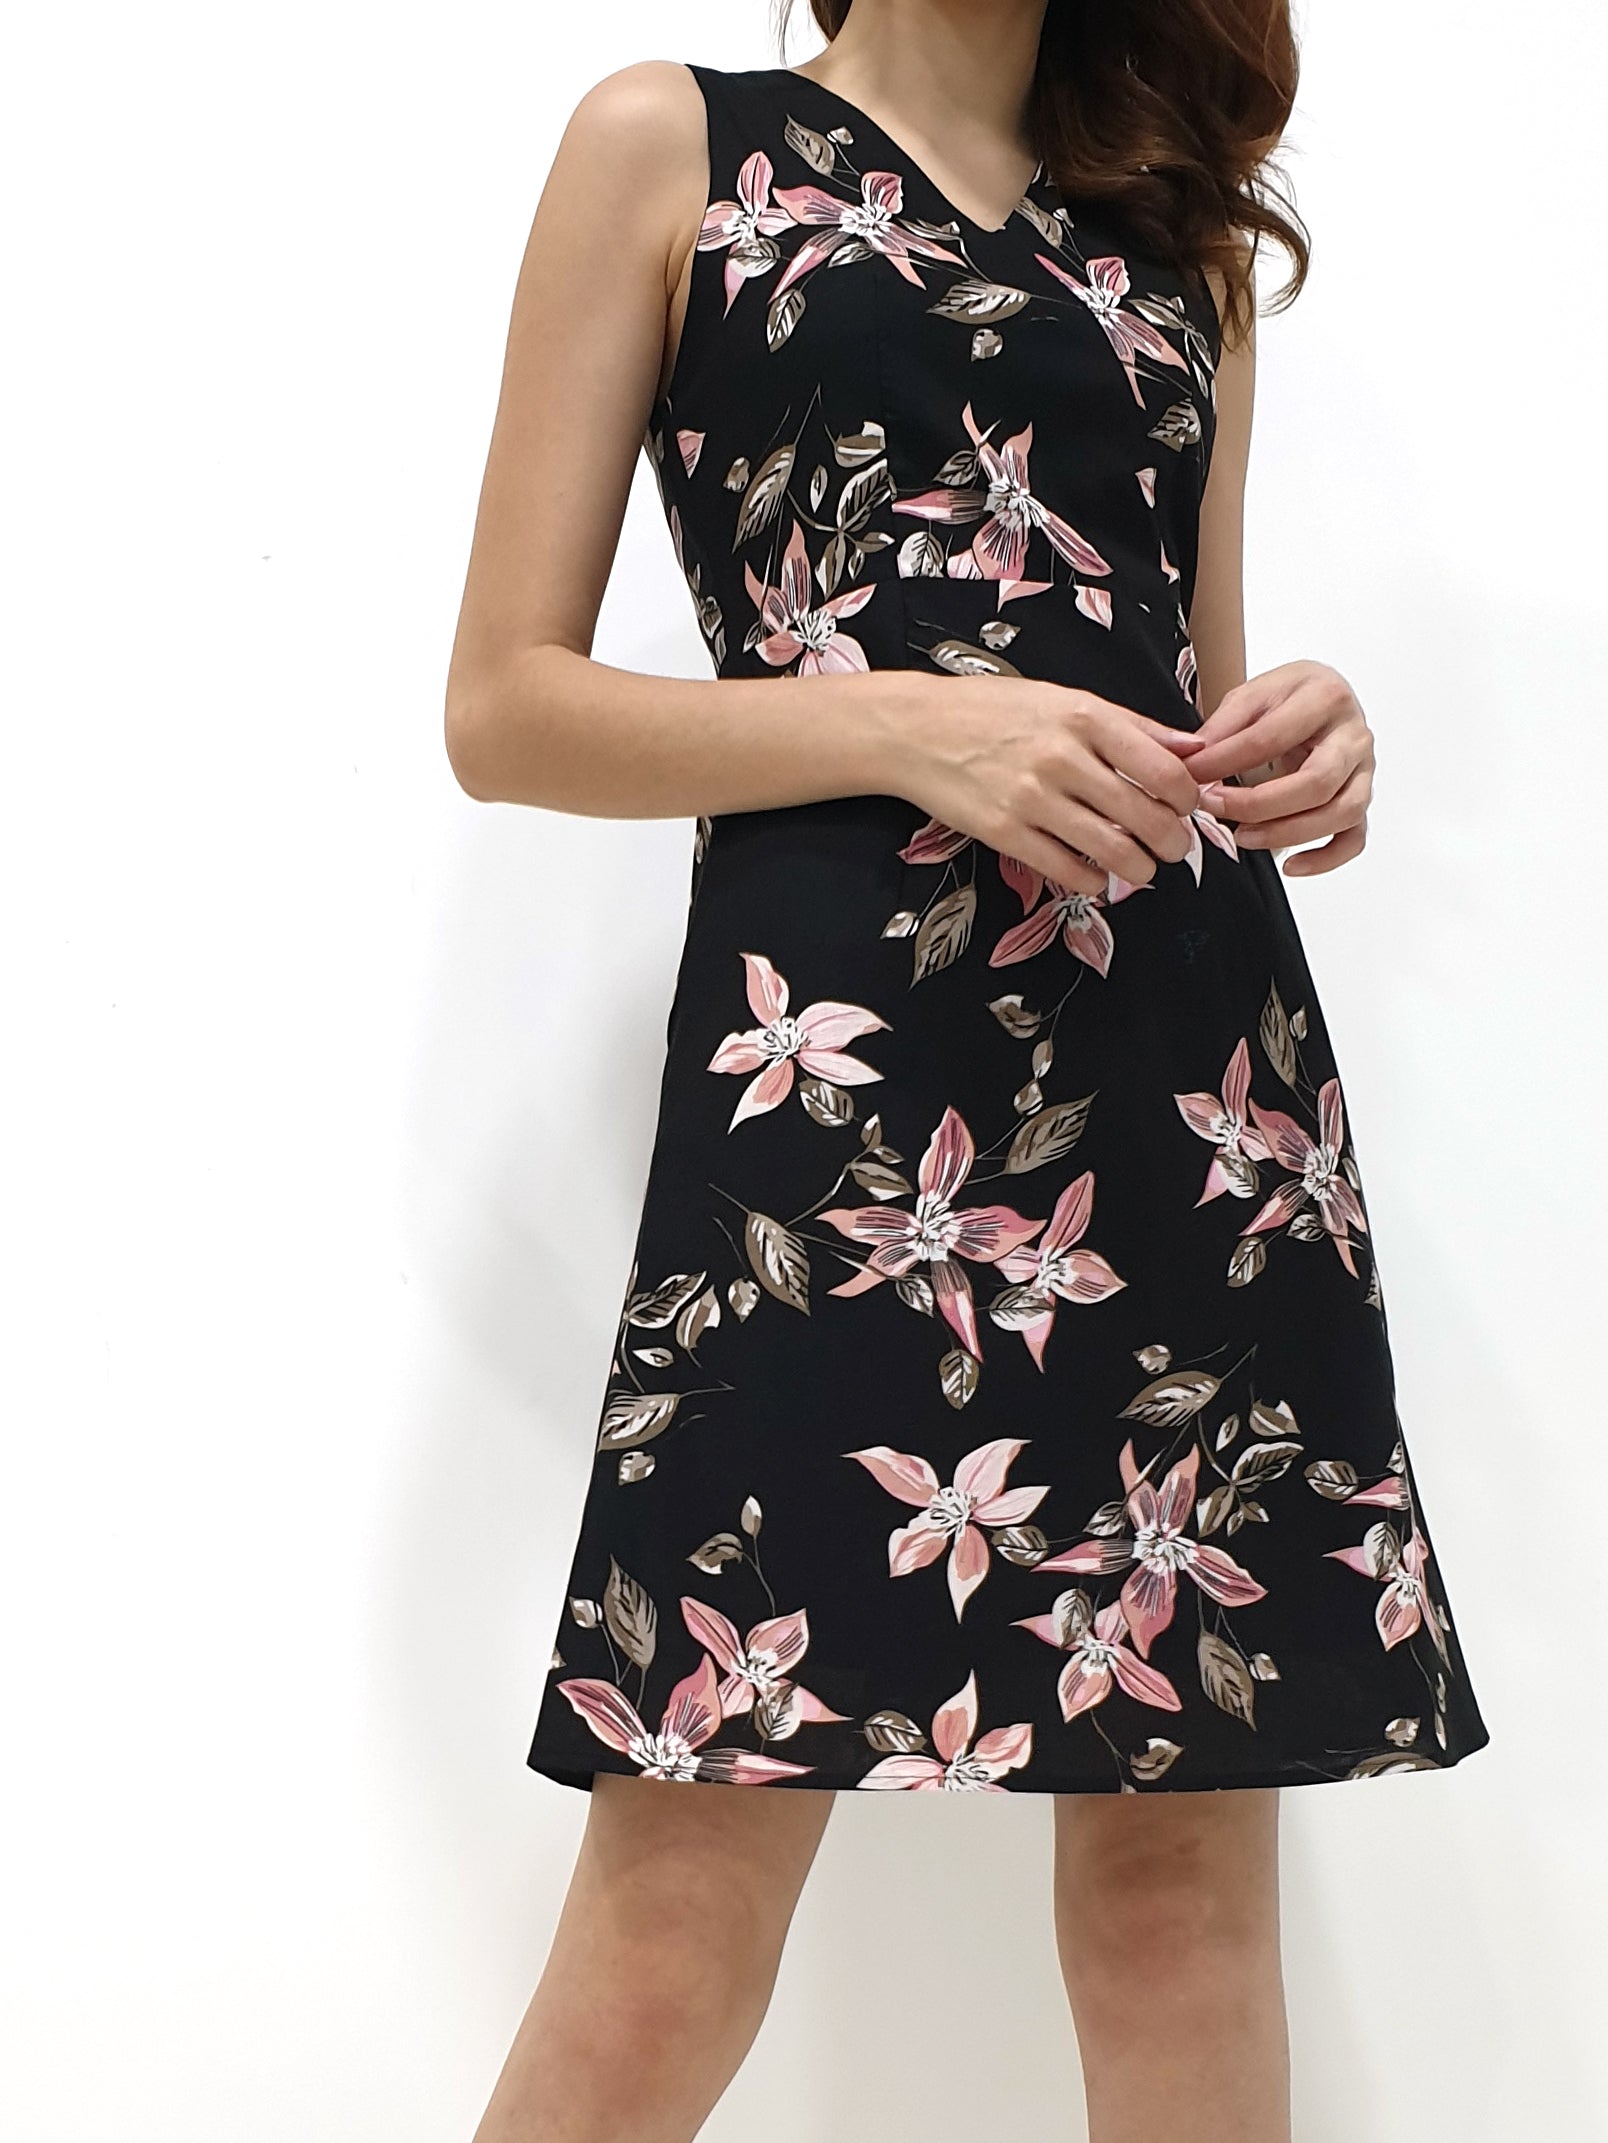 Floral Faux Wrap Dress (Non-returnable) - Ferlicious